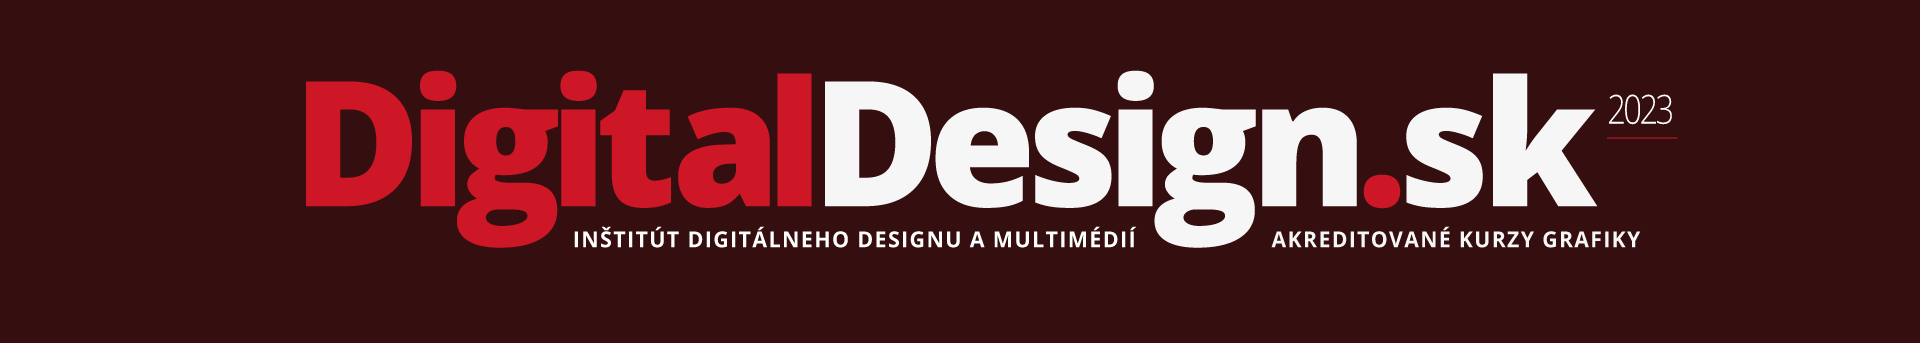 DigitalDesign.sk 2023 = akreditované kurzy grafiky, kurzy Adobe Illustrator, kurzy Photoshop,, kurzy InDesign, kurzy Corel, kurzy tvorba webstránok, kurzy grafický design, kurzy webdesign, kurzy KOMPAS, Košice, Prešov